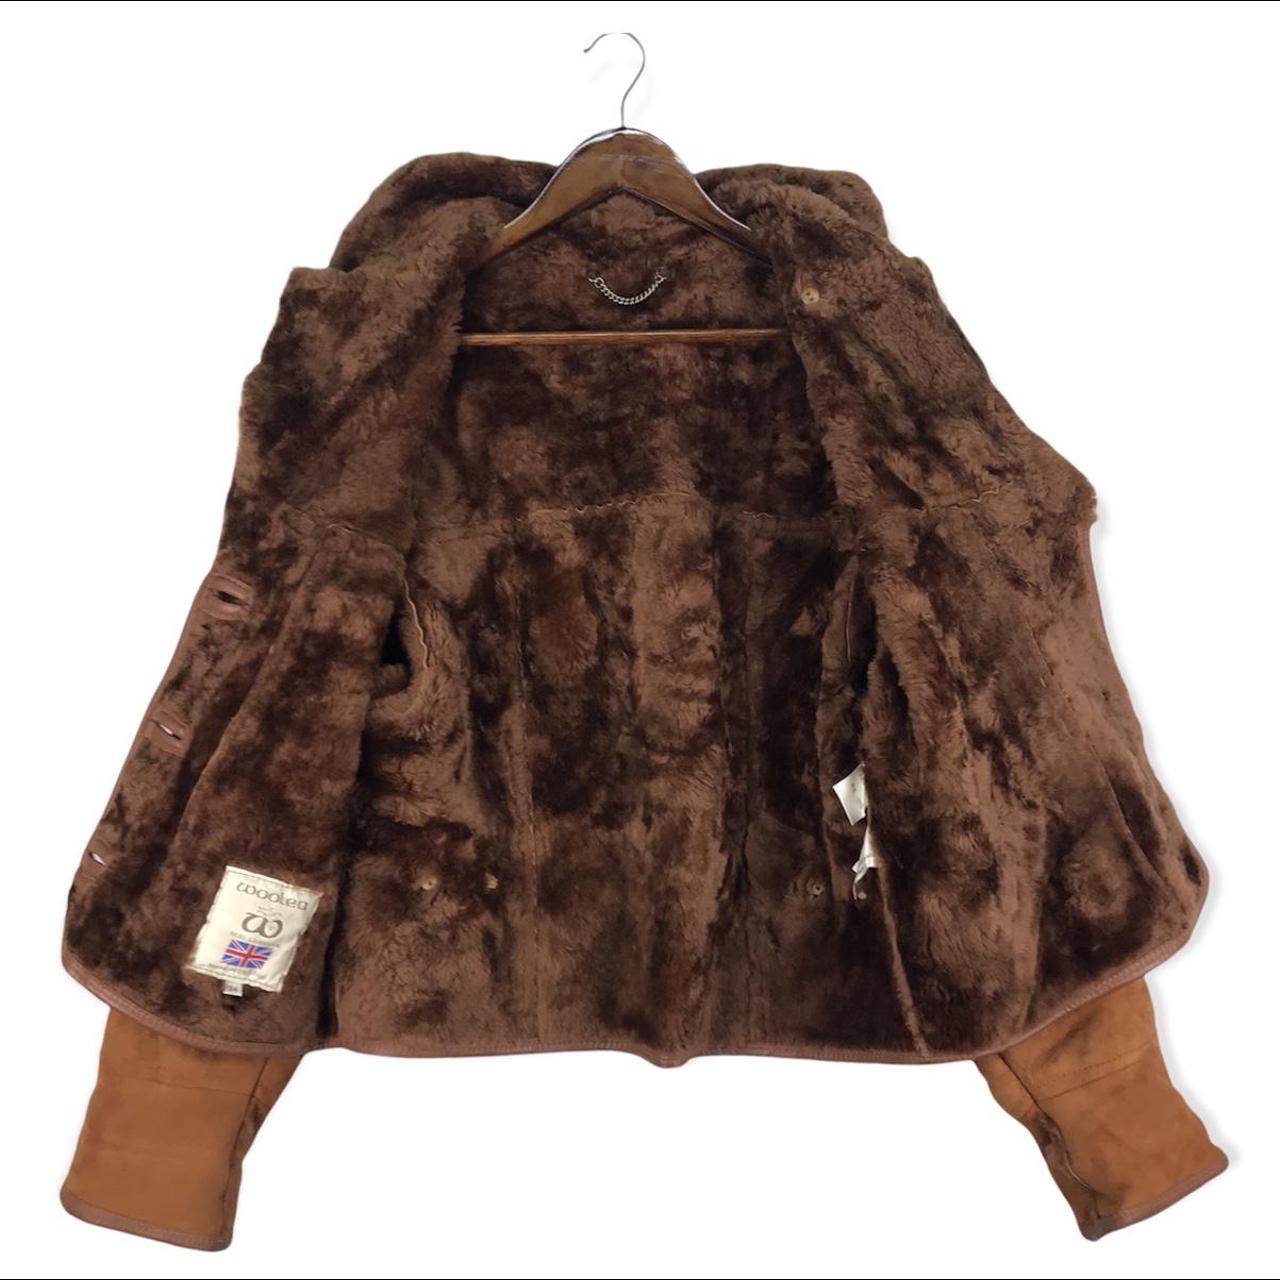 Vintage Woolea Sheepskin Leather Jacket #winter... - Depop